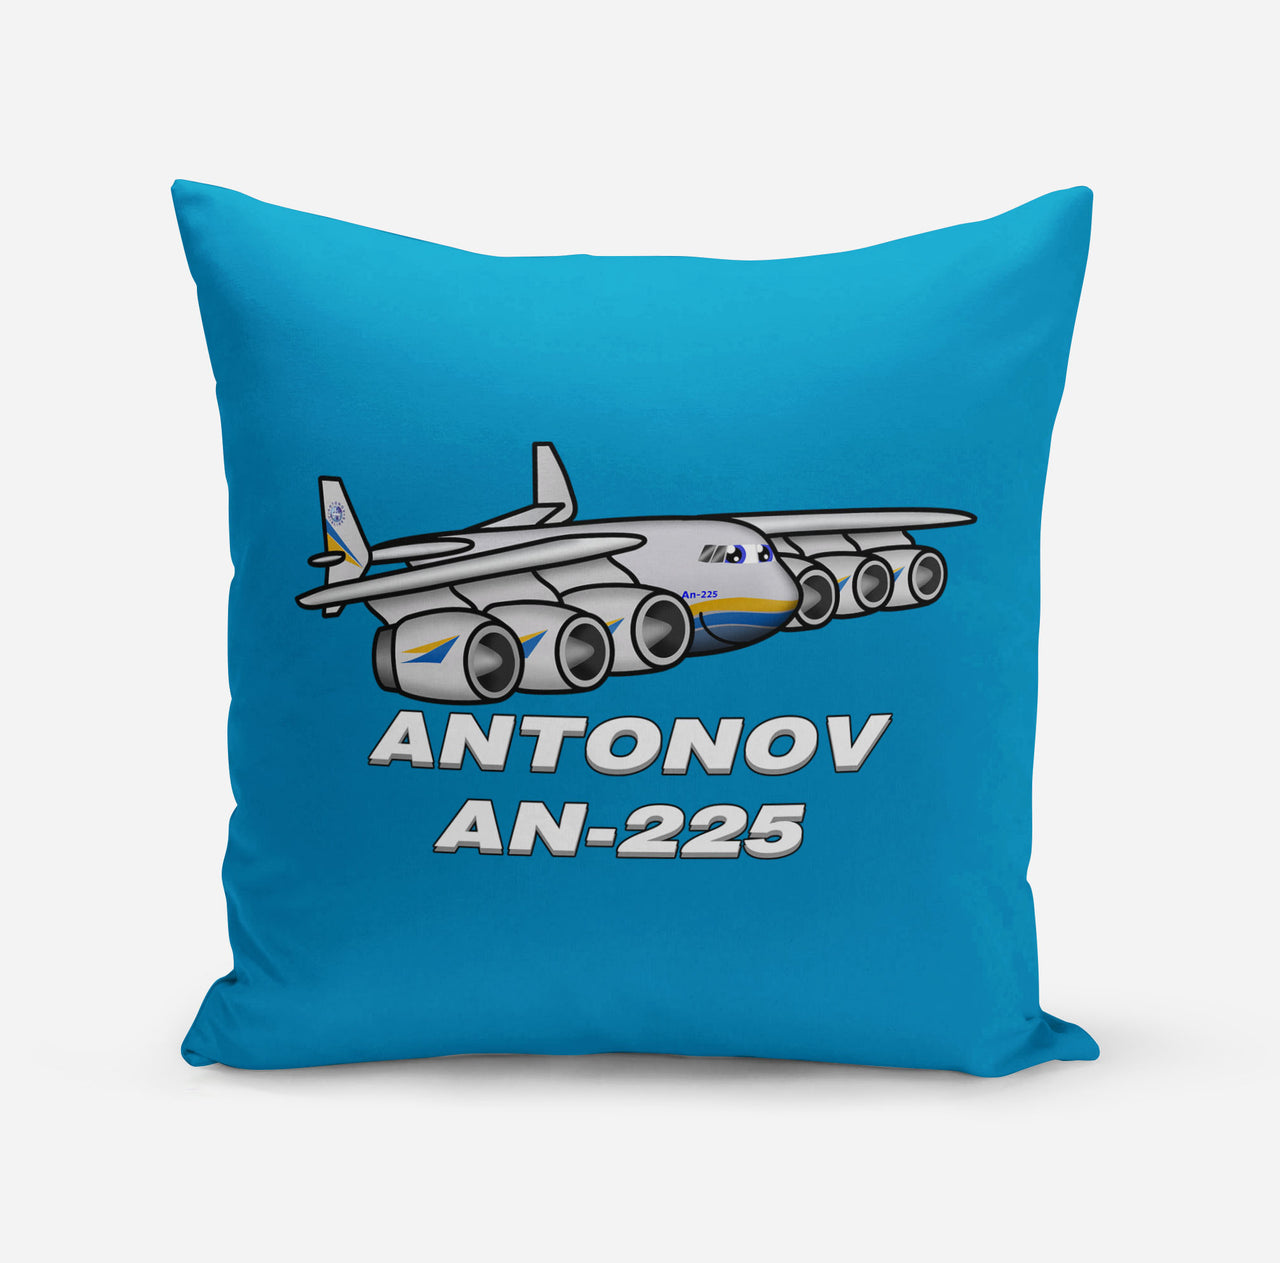 Antonov AN-225 (25) Designed Pillows